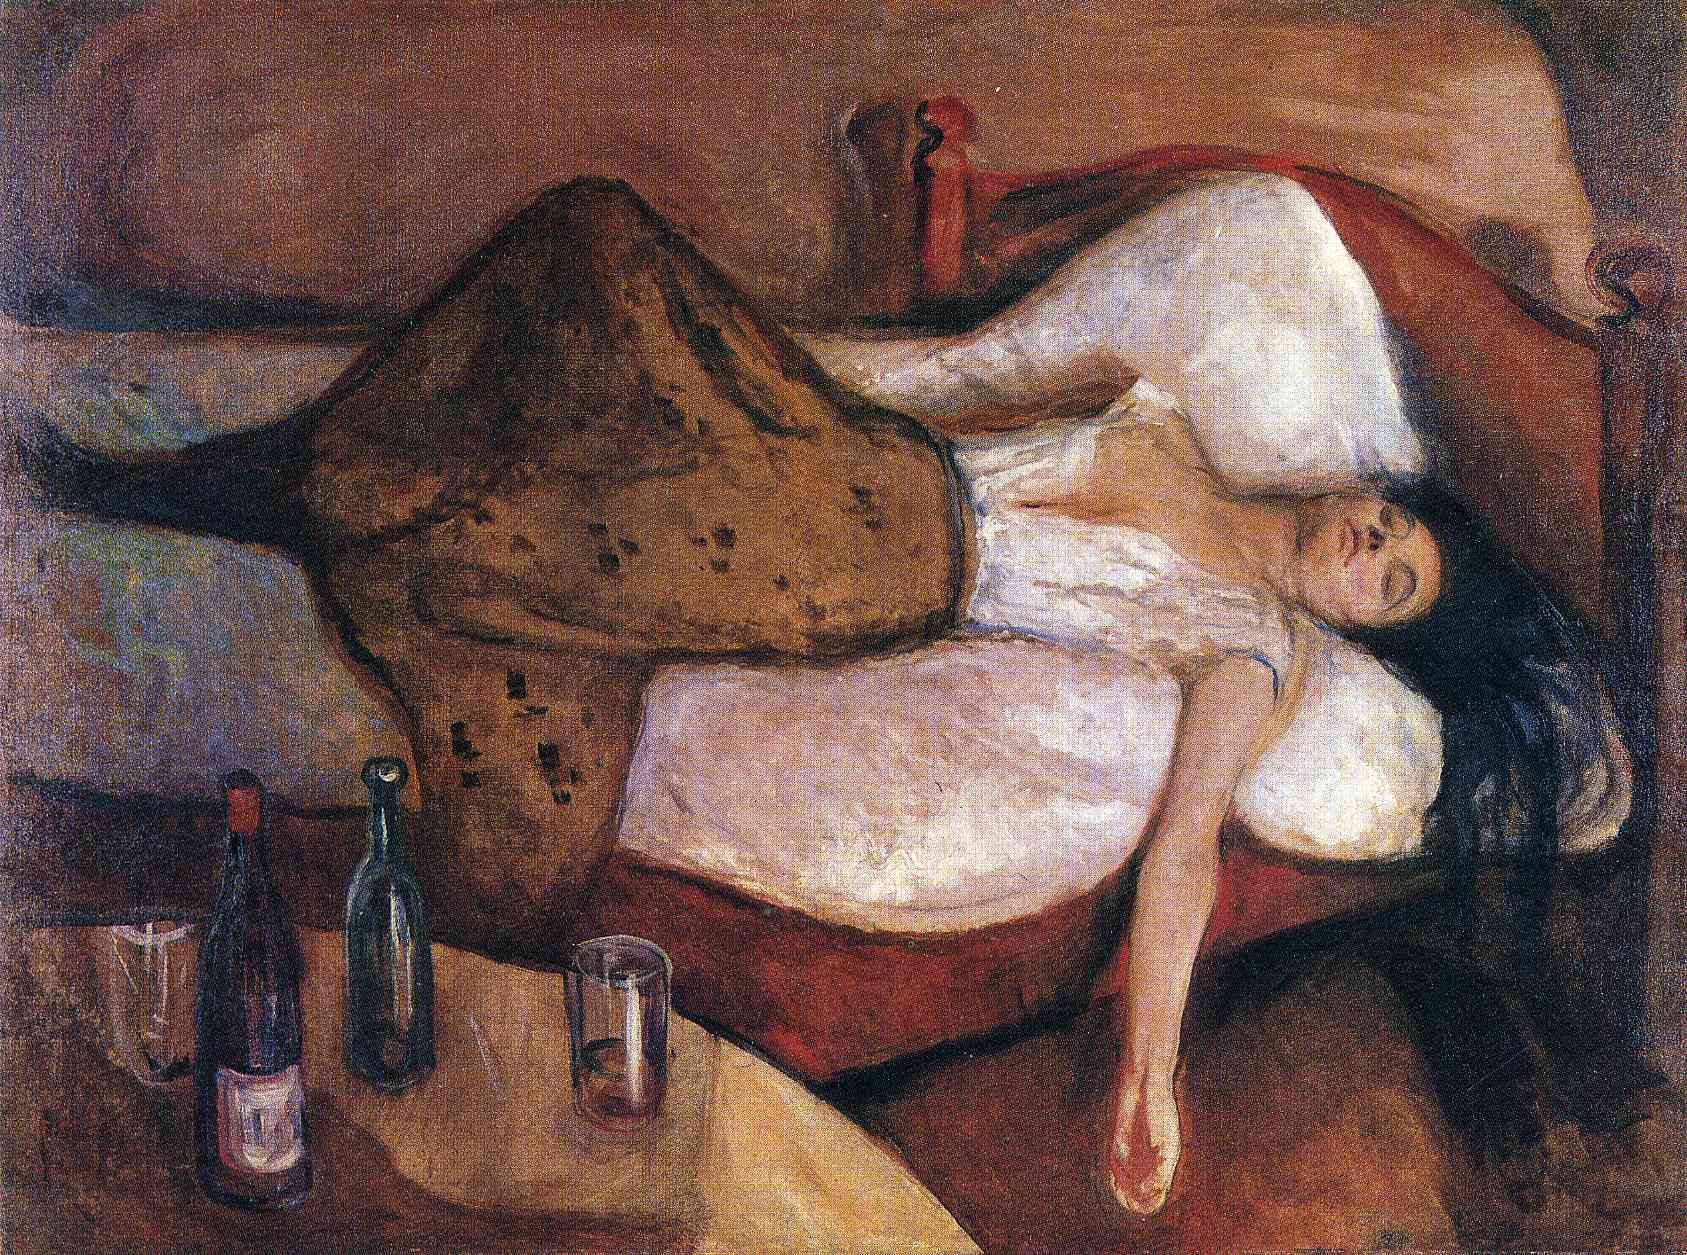 Την επόμενη μέρα by Edvard Munch - 1894/95 - 115 x 152 εκ. 